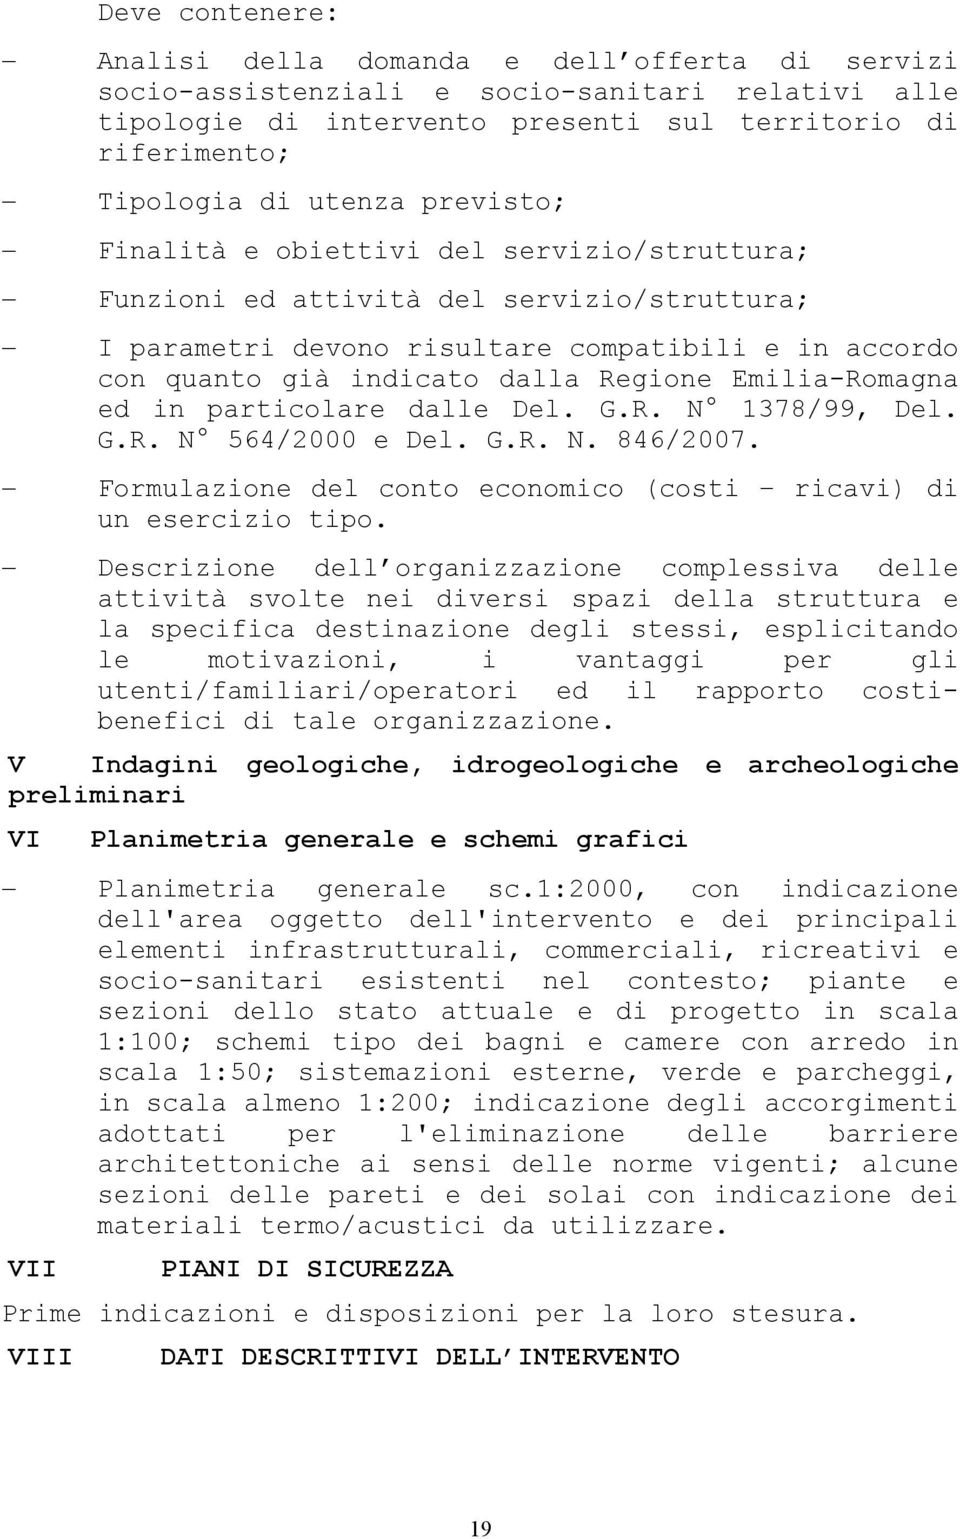 Emilia-Romagna ed in particolare dalle Del. G.R. N 1378/99, Del. G.R. N 564/2000 e Del. G.R. N. 846/2007. Formulazione del conto economico (costi ricavi) di un esercizio tipo.